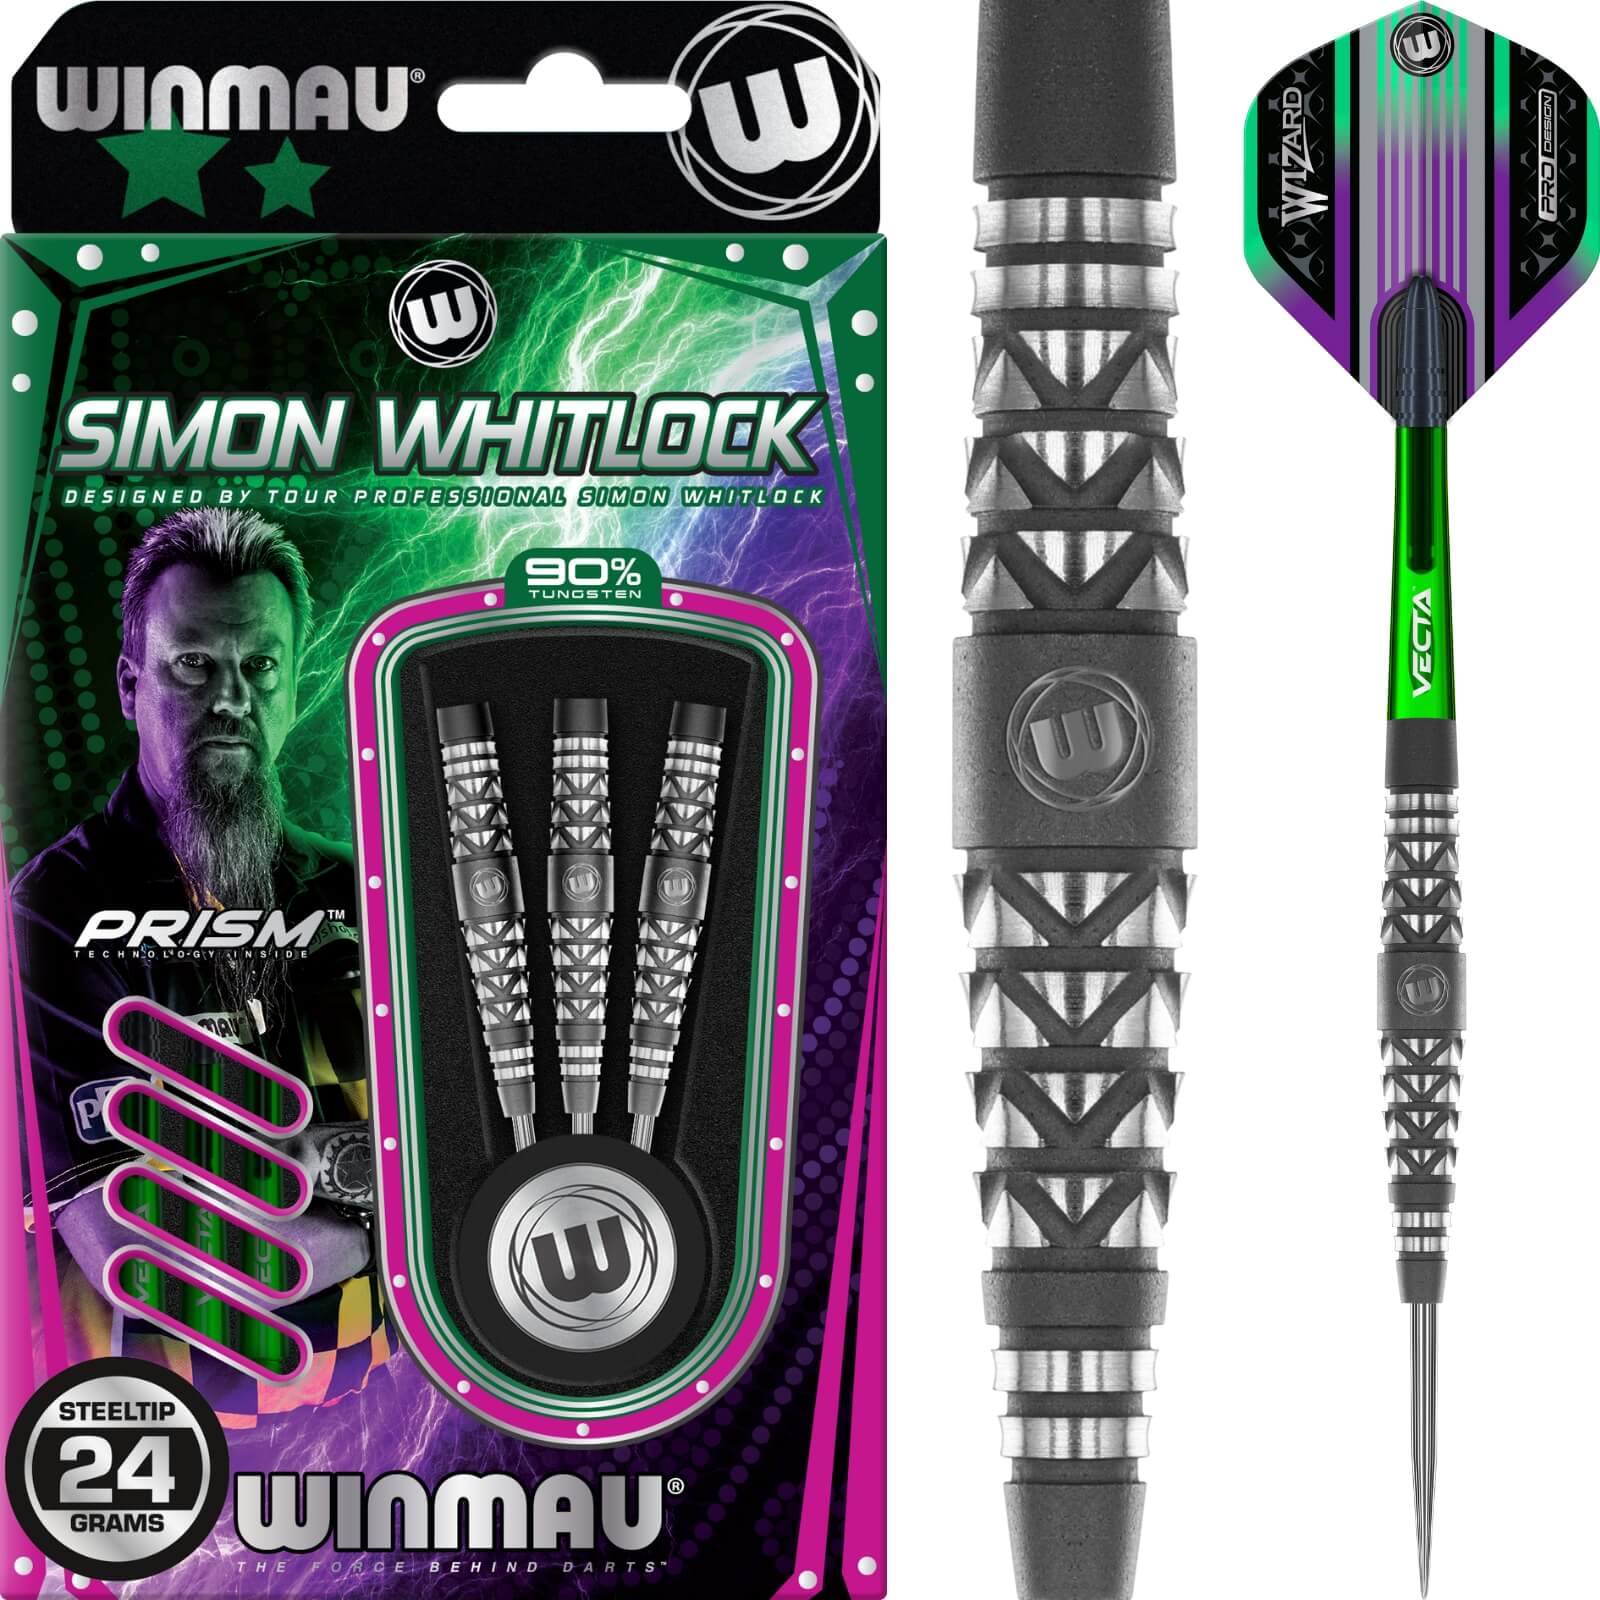 Darts - Winmau - Simon Whitlock Atomised Grip Darts - Steel Tip - 90% Tungsten - 22g 24g 